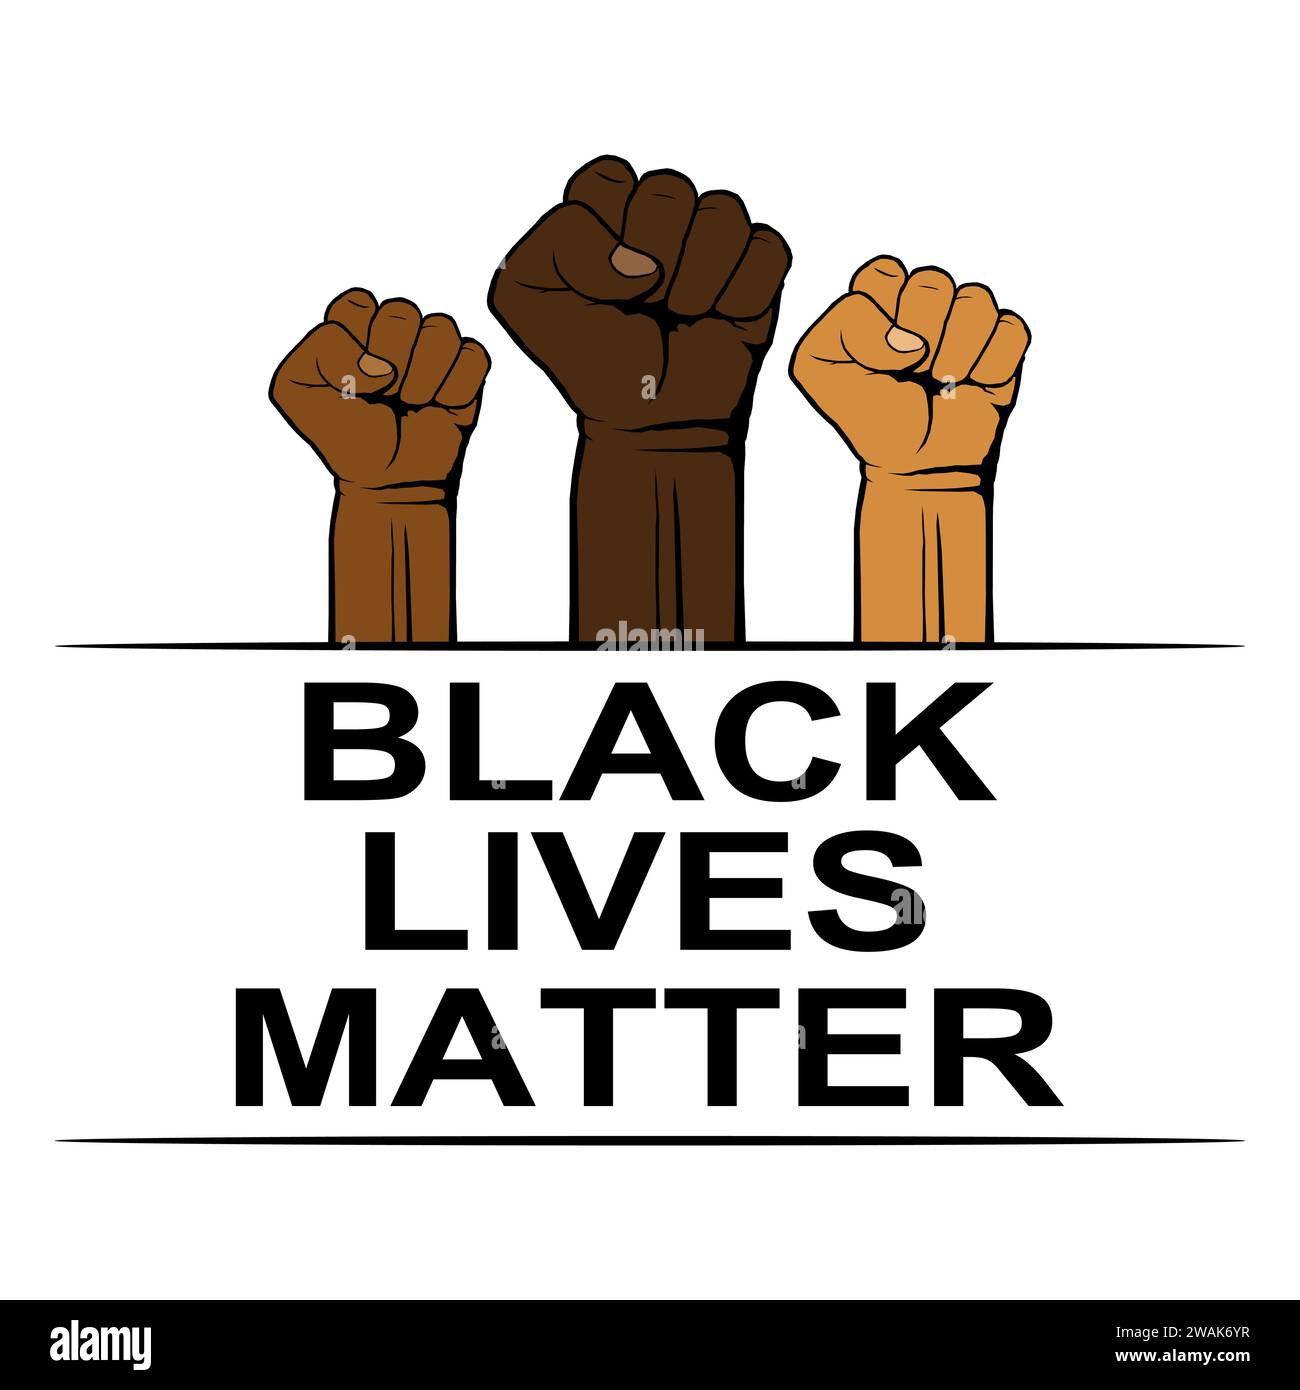 Black Lives Matter, affiche avec poings pour protester, rassemblement ou campagne de sensibilisation contre la discrimination raciale de couleur foncée. Contre la police brutale Illustration de Vecteur